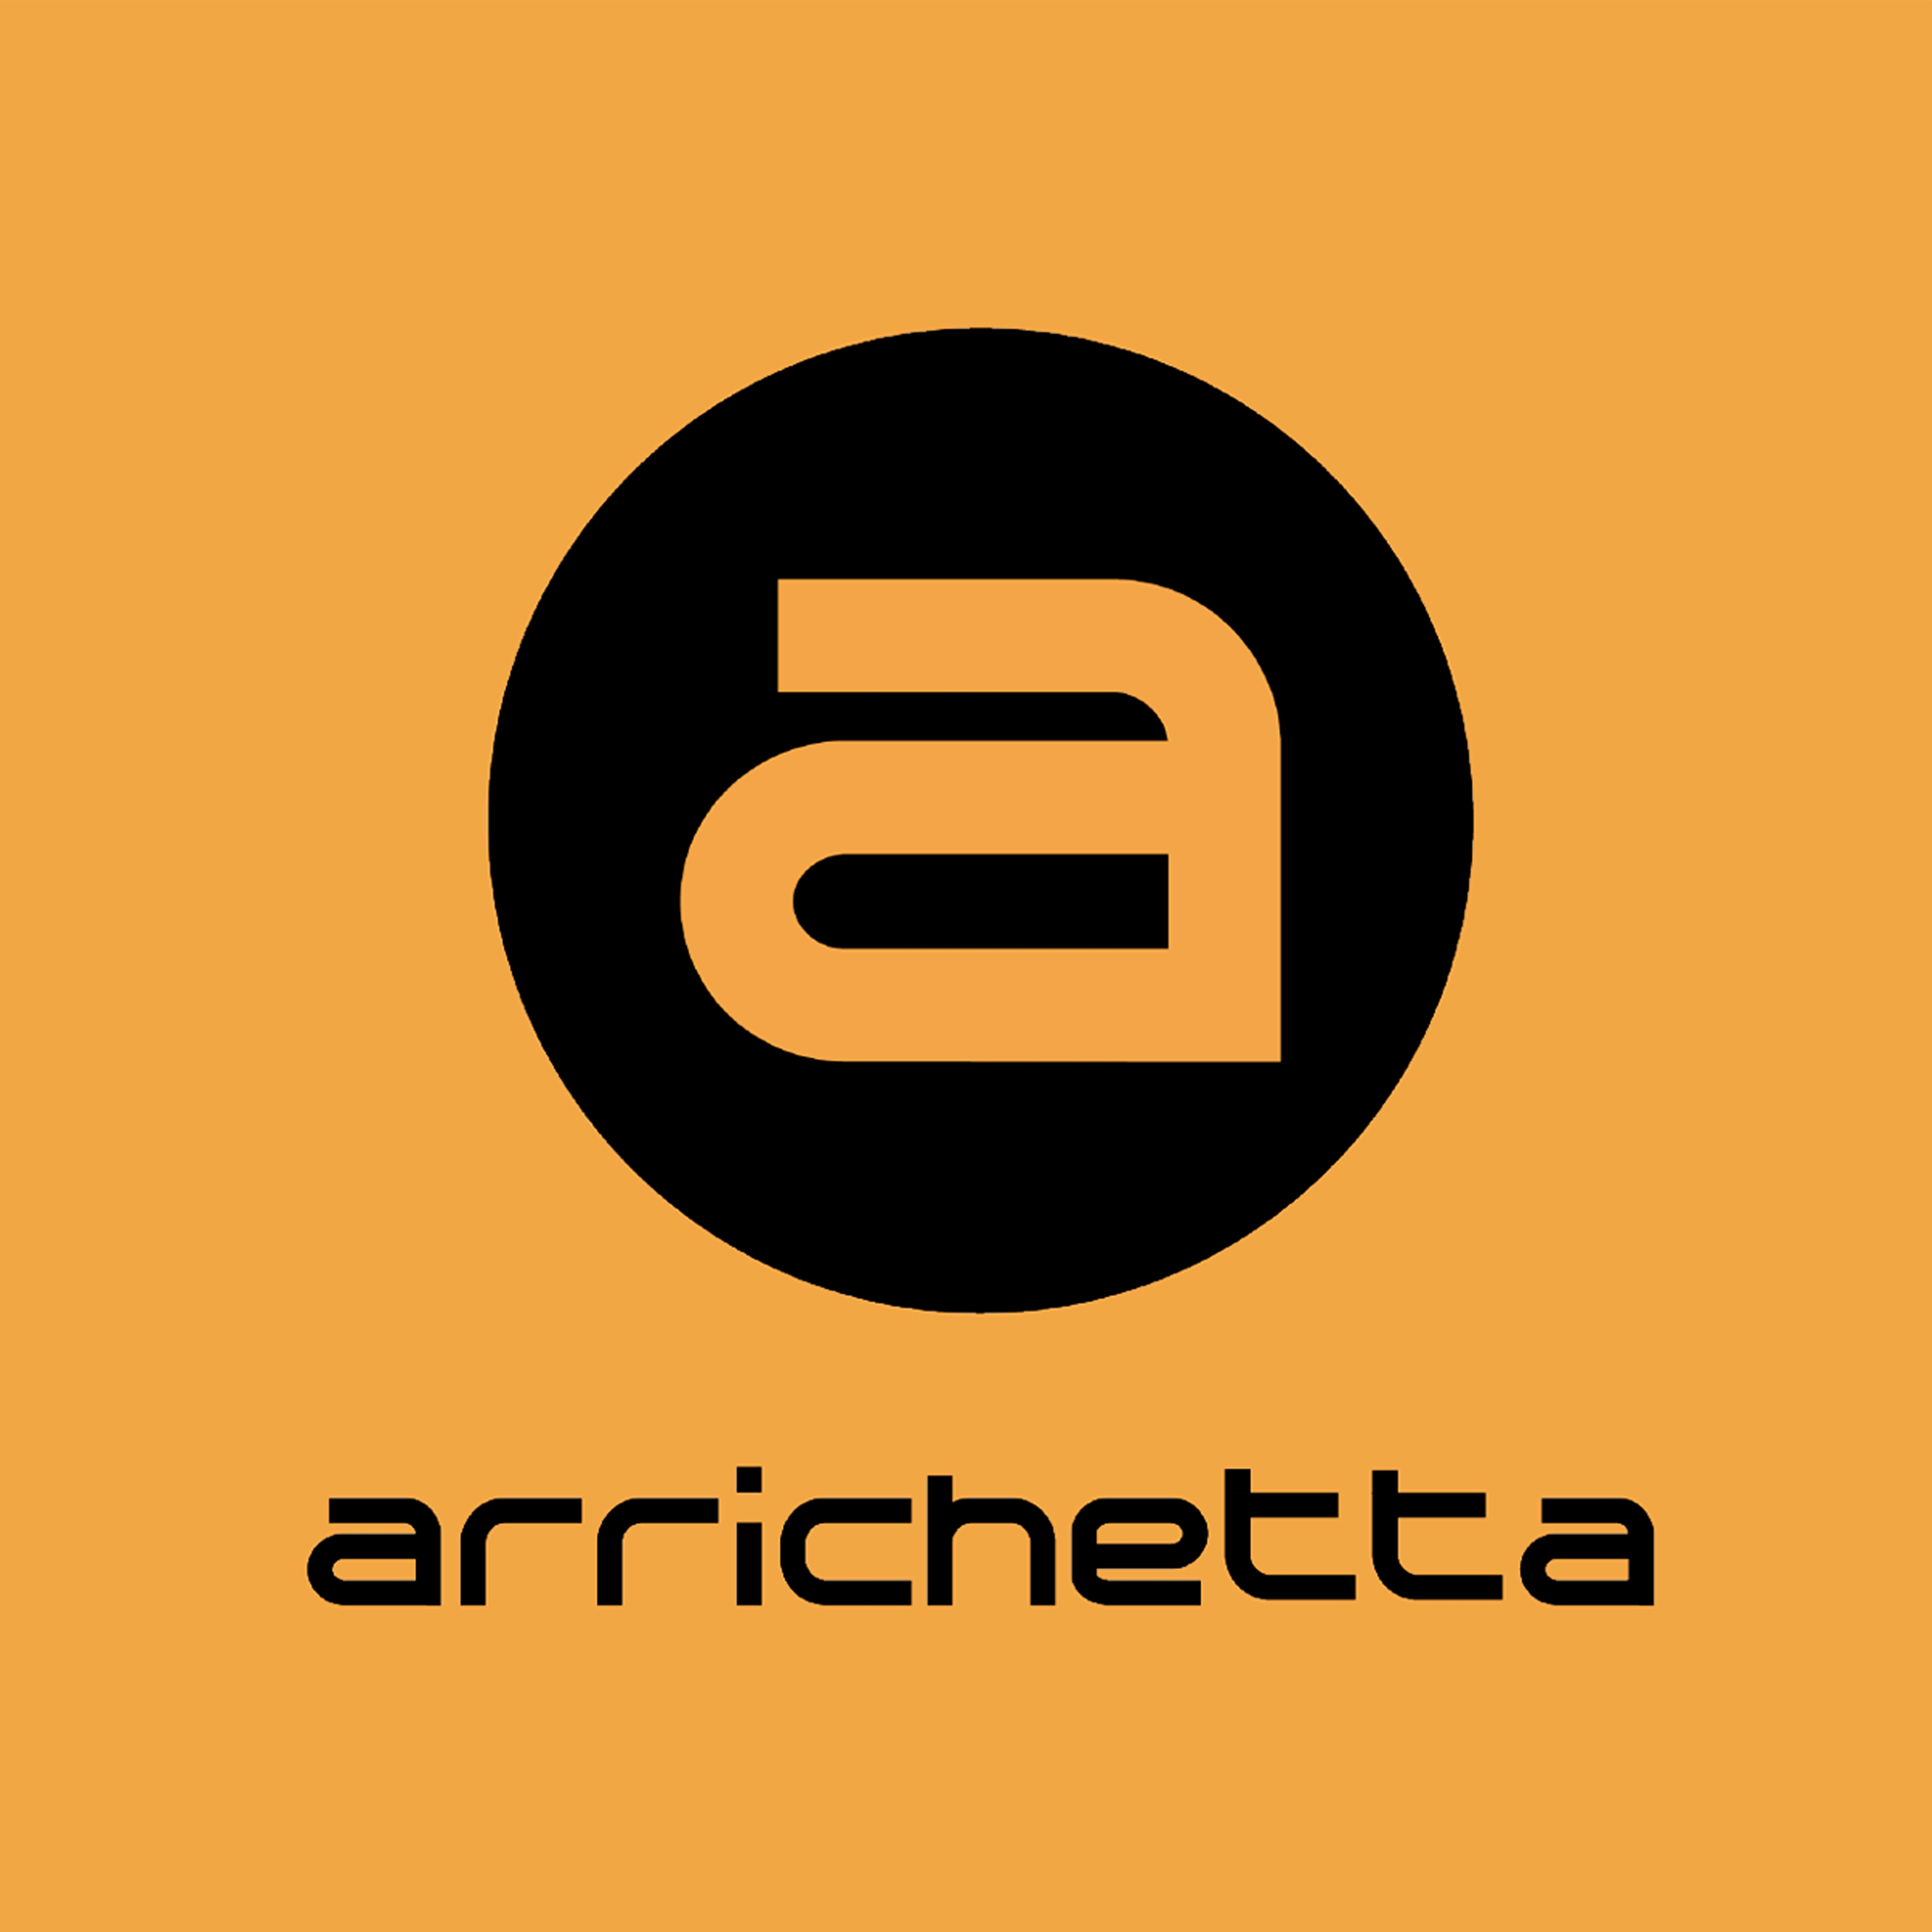 Arrichetta